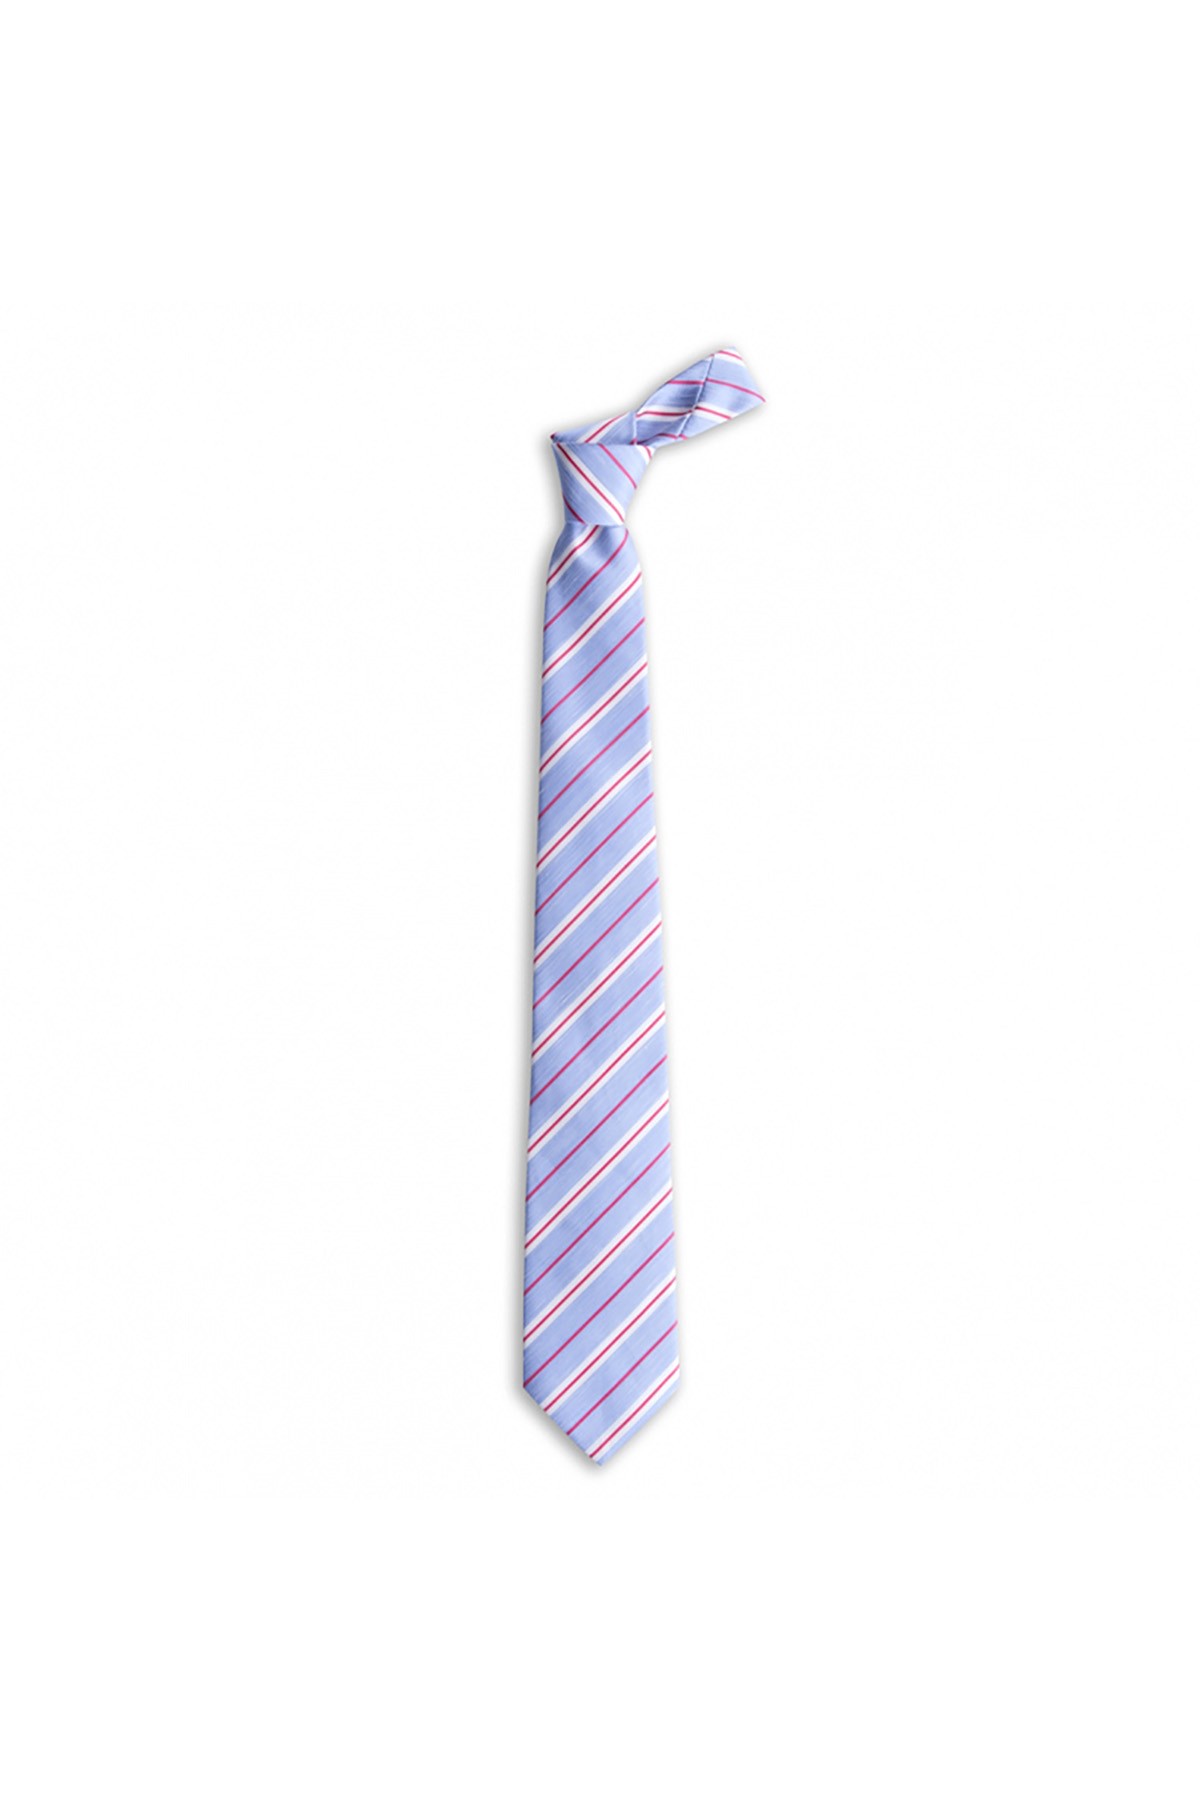 Klasik çizgili 8 cm genişliğinde keten ve ipek karışımlı kravat